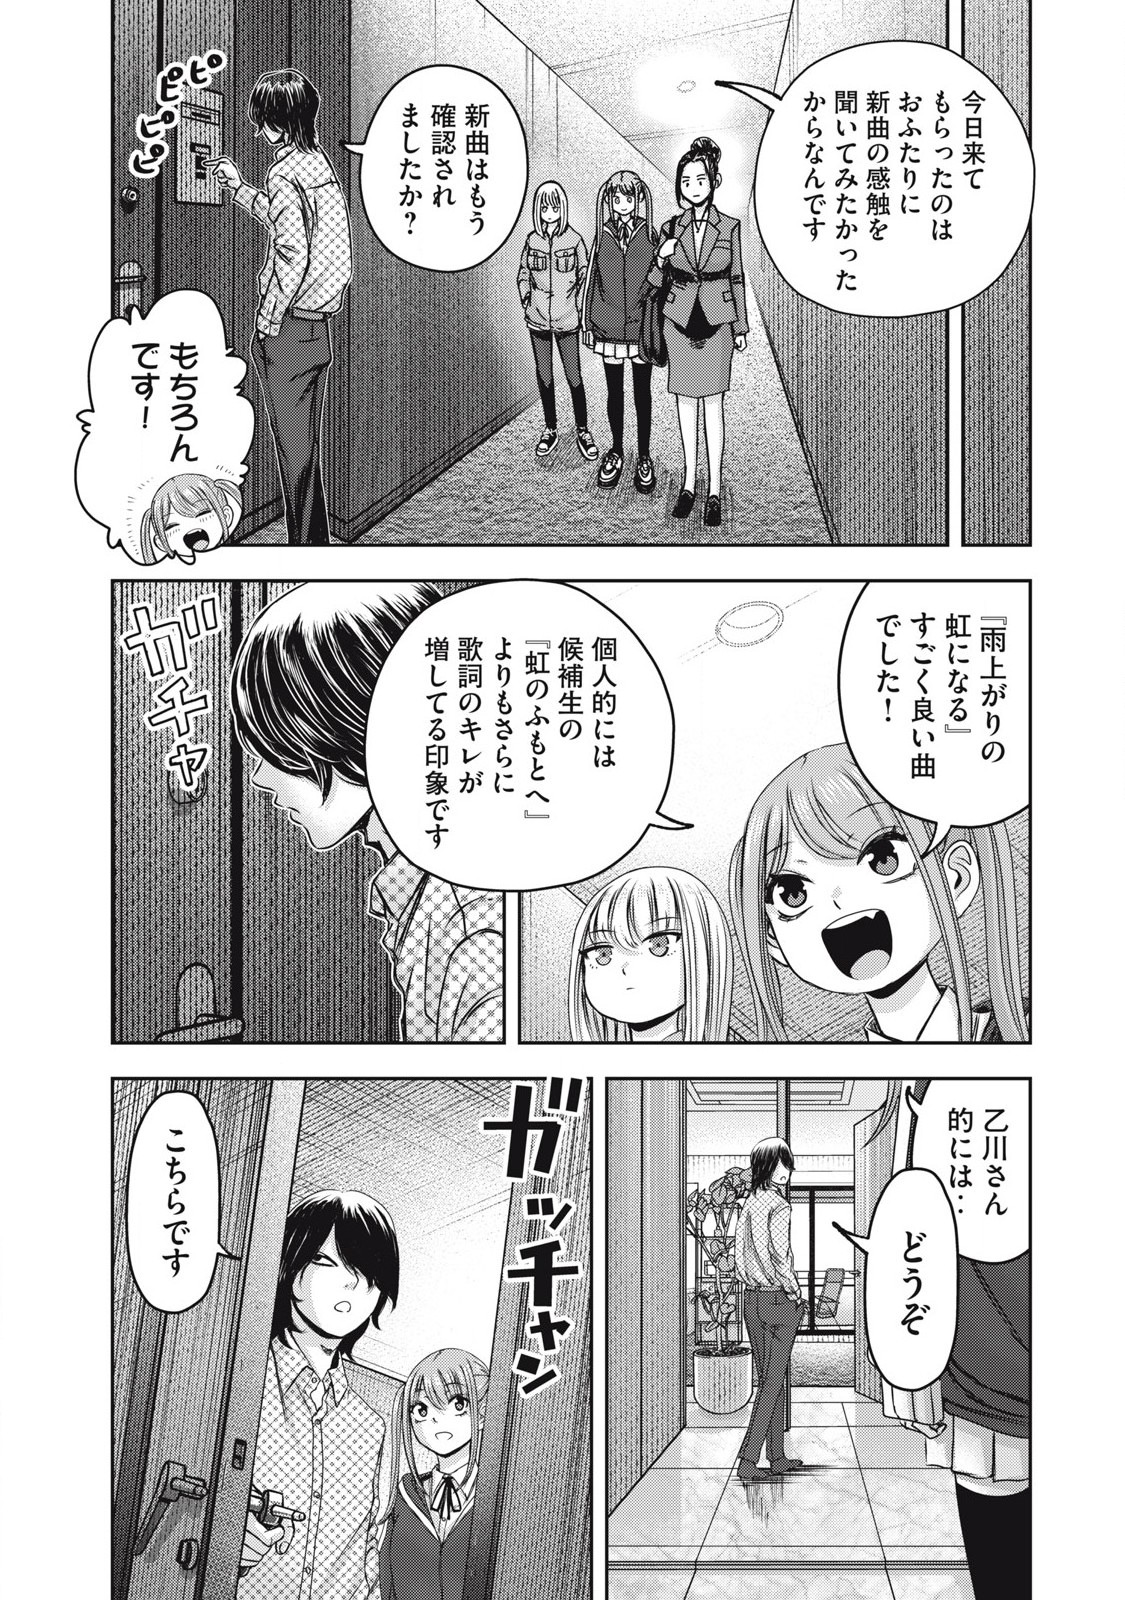 Watashi no Arika - Chapter 52 - Page 5